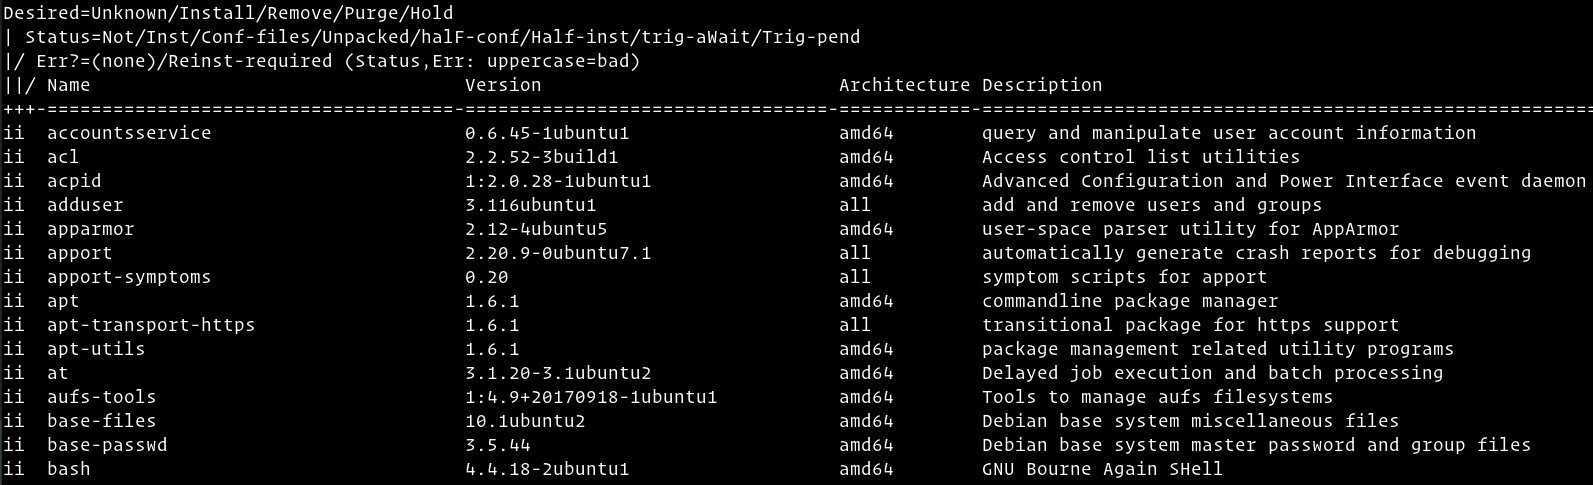 Как посмотреть список установленных программ в ubuntu